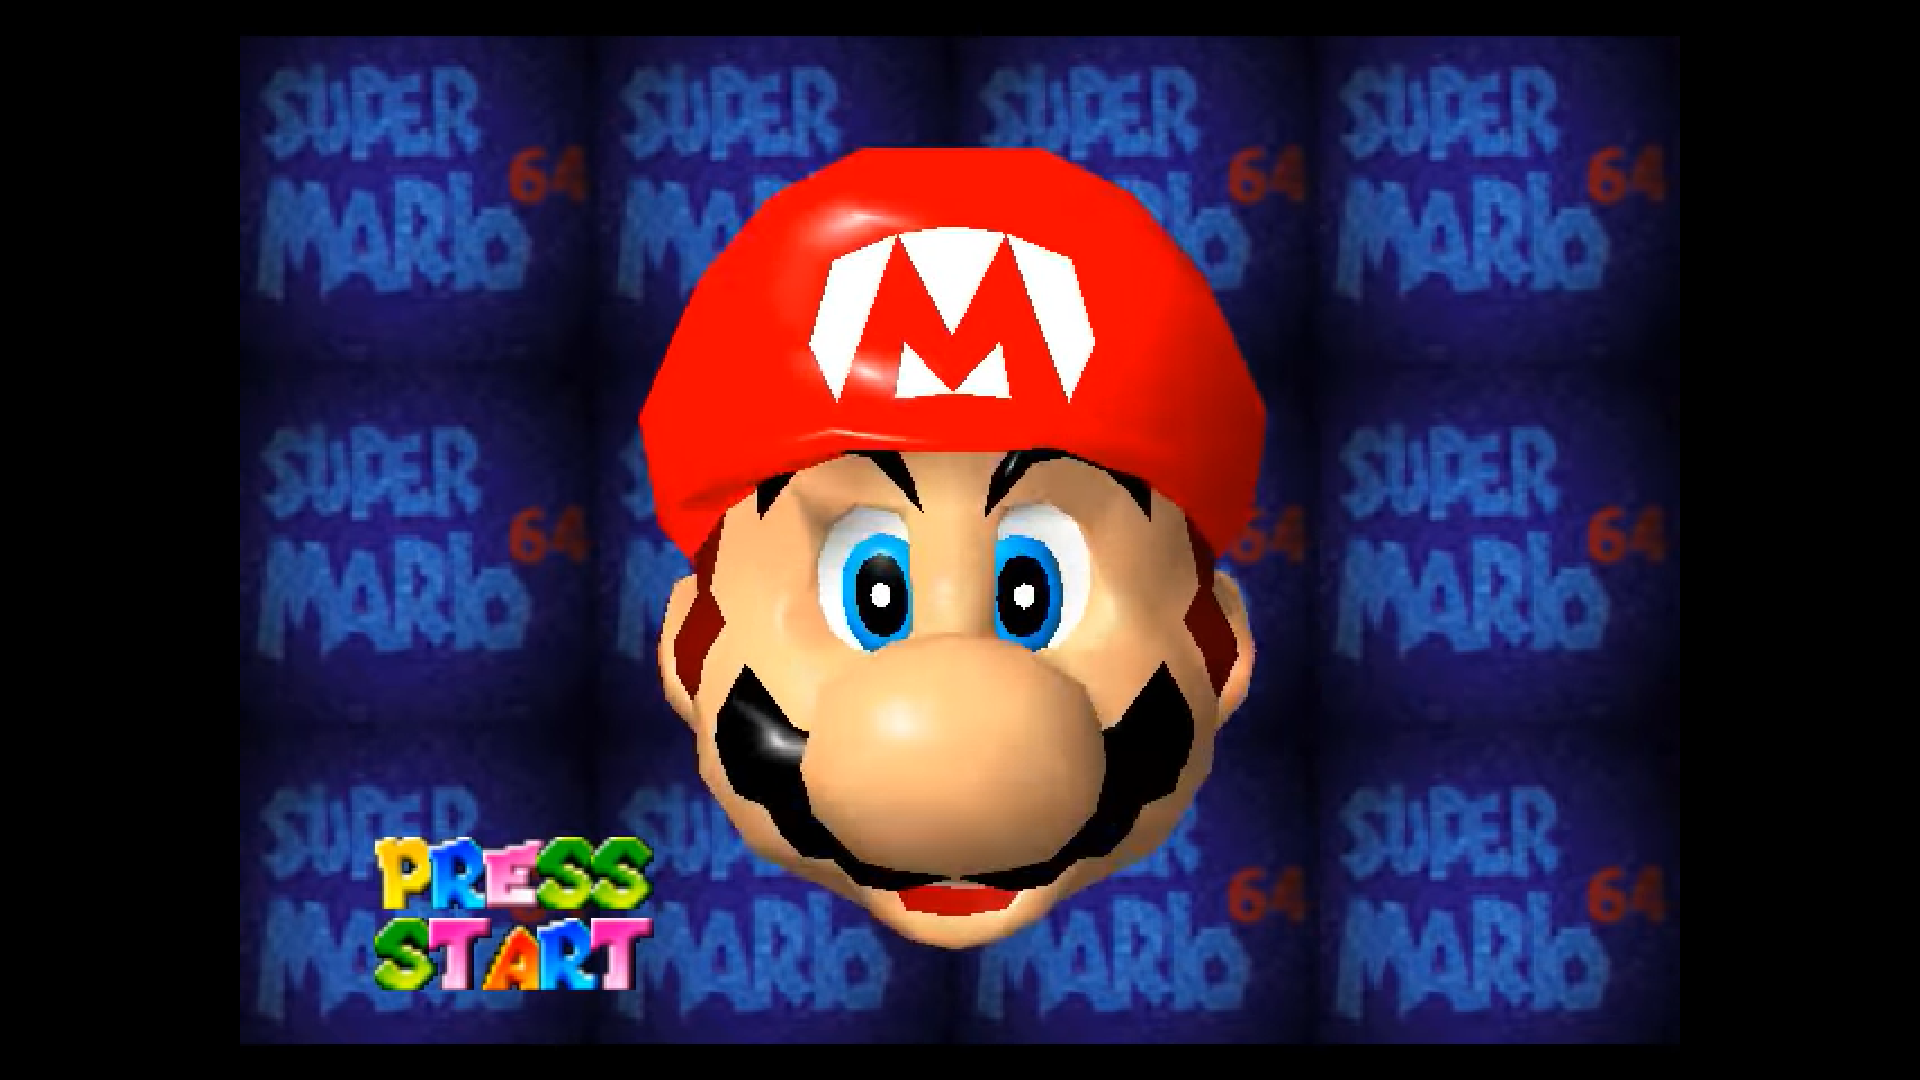 Super Mario 64 je prvi nastavak Super Maria koji je prebačen iz 2D prikaza u 3D. Lansiran je istovremeno kao i nova konzola Nintendo 64, za koju je Super Mario 64 bio jedna od glavnih igara. Igrač prvi put ima slobodu istraživati okolinu u sve tri dimenzije, bez ikakvih ograničenja. Maleni joystick koji se nalazi na kontroleru Nintenda 64 igračima je omogućio iznimno precizne kretnje, čime je ustvari igra služila kao demonstracija svih sposobnosti konzole, uključujući i onih za naprednu grafiku tog doba.